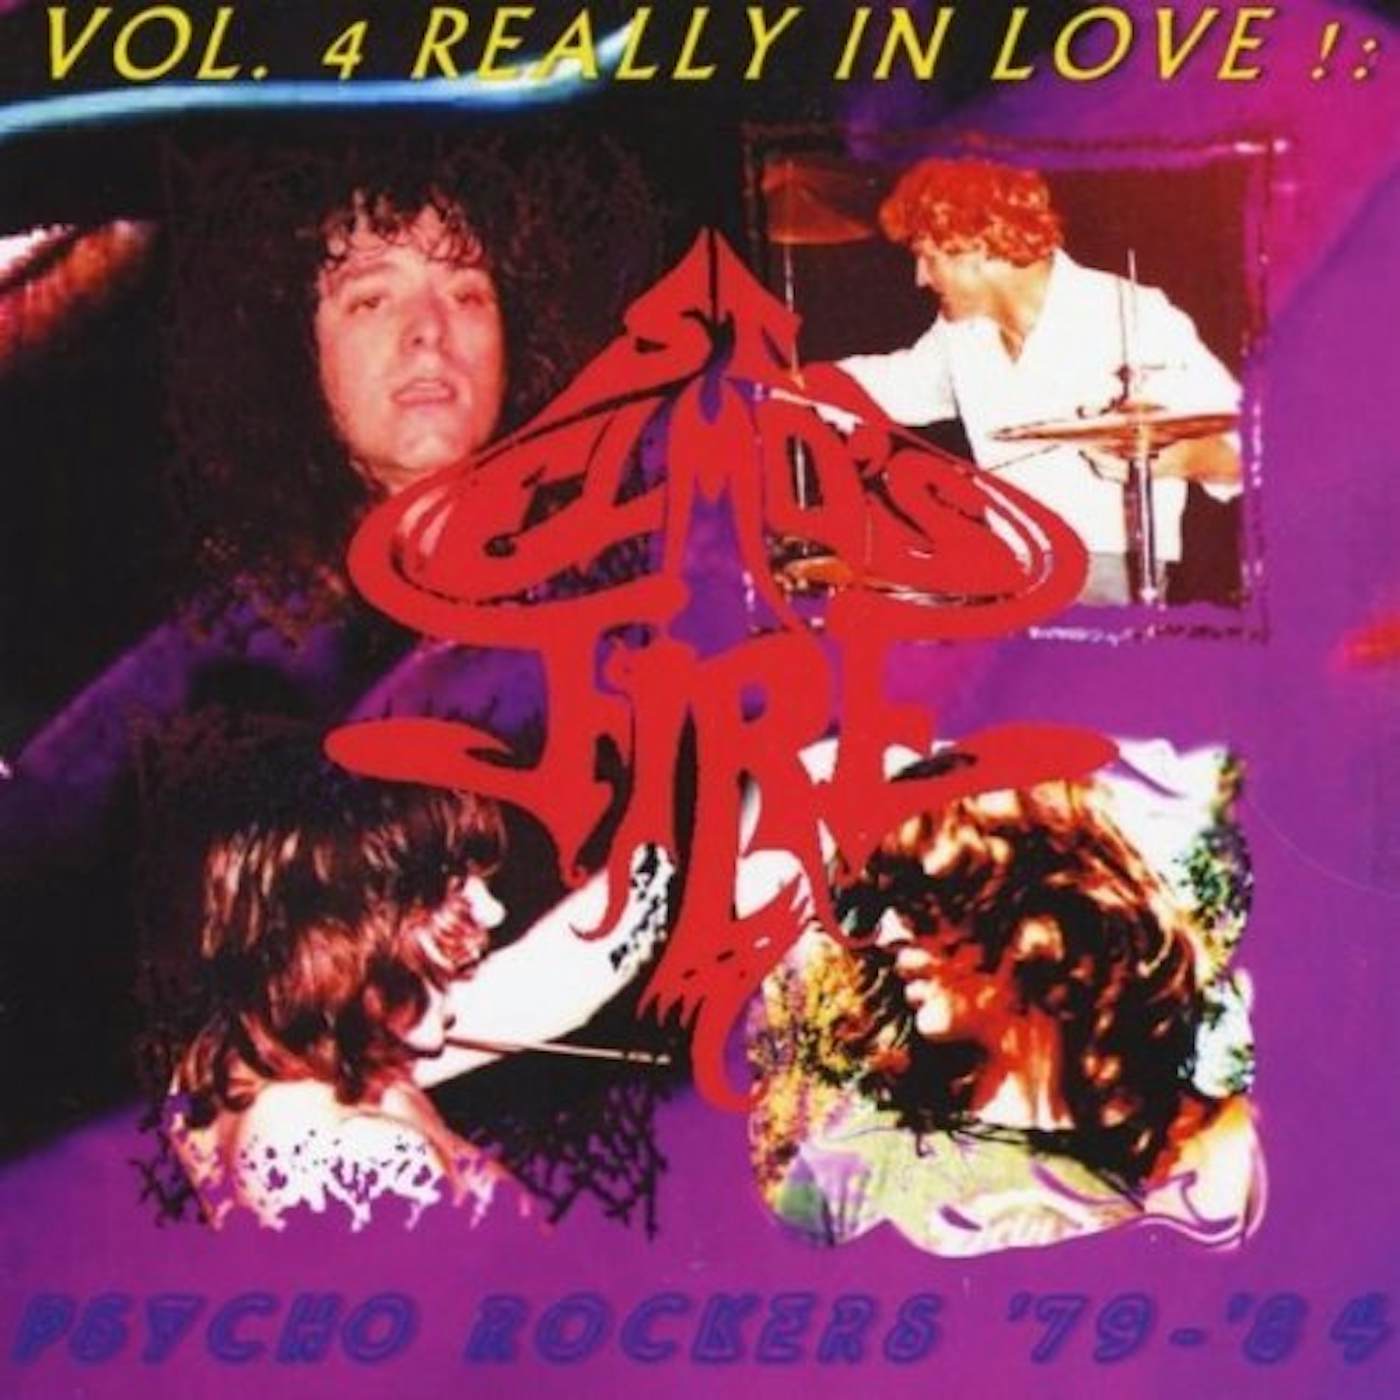 St. Elmo's Fire REALLY IN LOVE!: PSYCHO ROCKERS 1979-84 4 CD